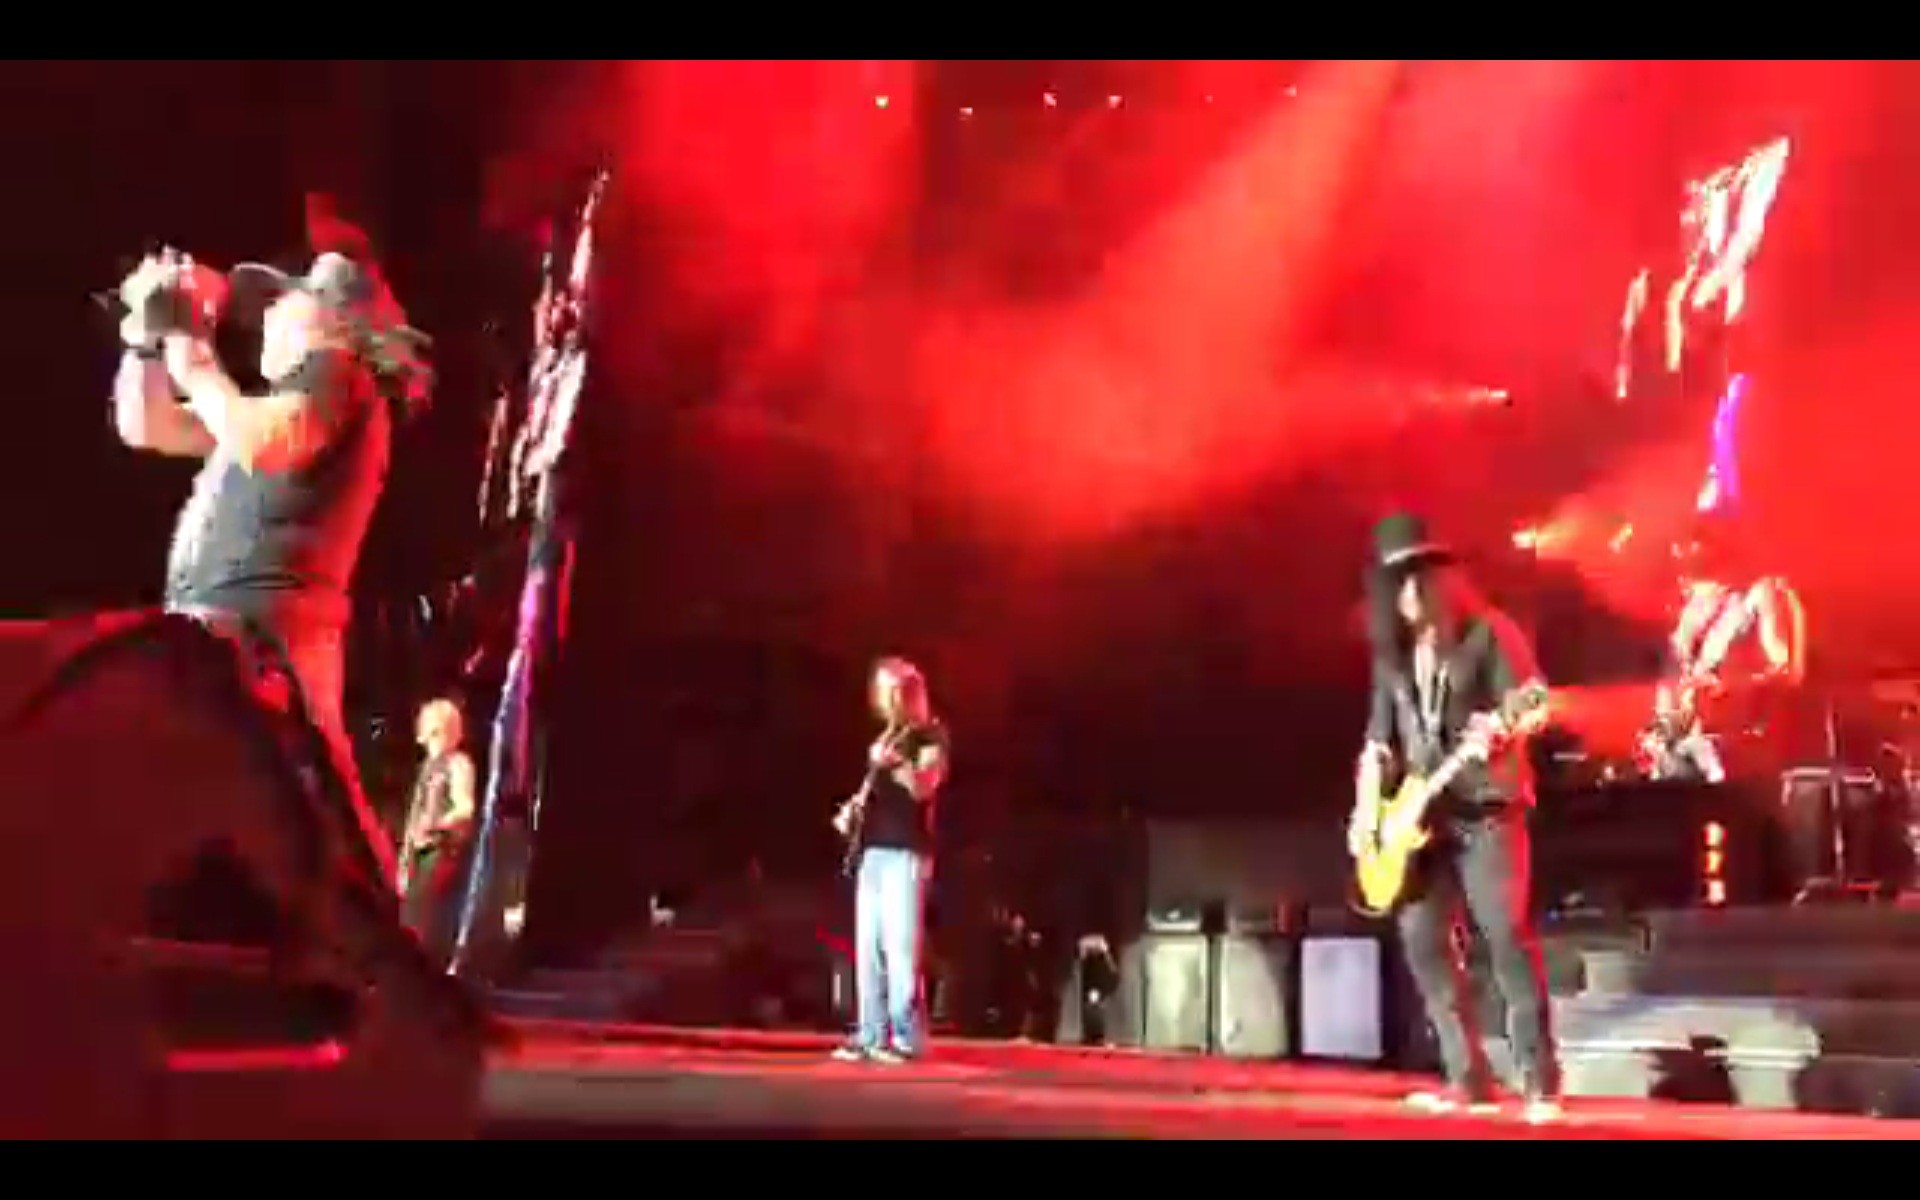 1920x1200 Gestern spielten Guns N' Roses in Hannover. GewitterstÃ¼rme sorgten fÃ¼r  VerzÃ¶gerungen. DafÃ¼r gab es aber einen Ãberraschungsauftritt von AC/DCs  Angus Young.